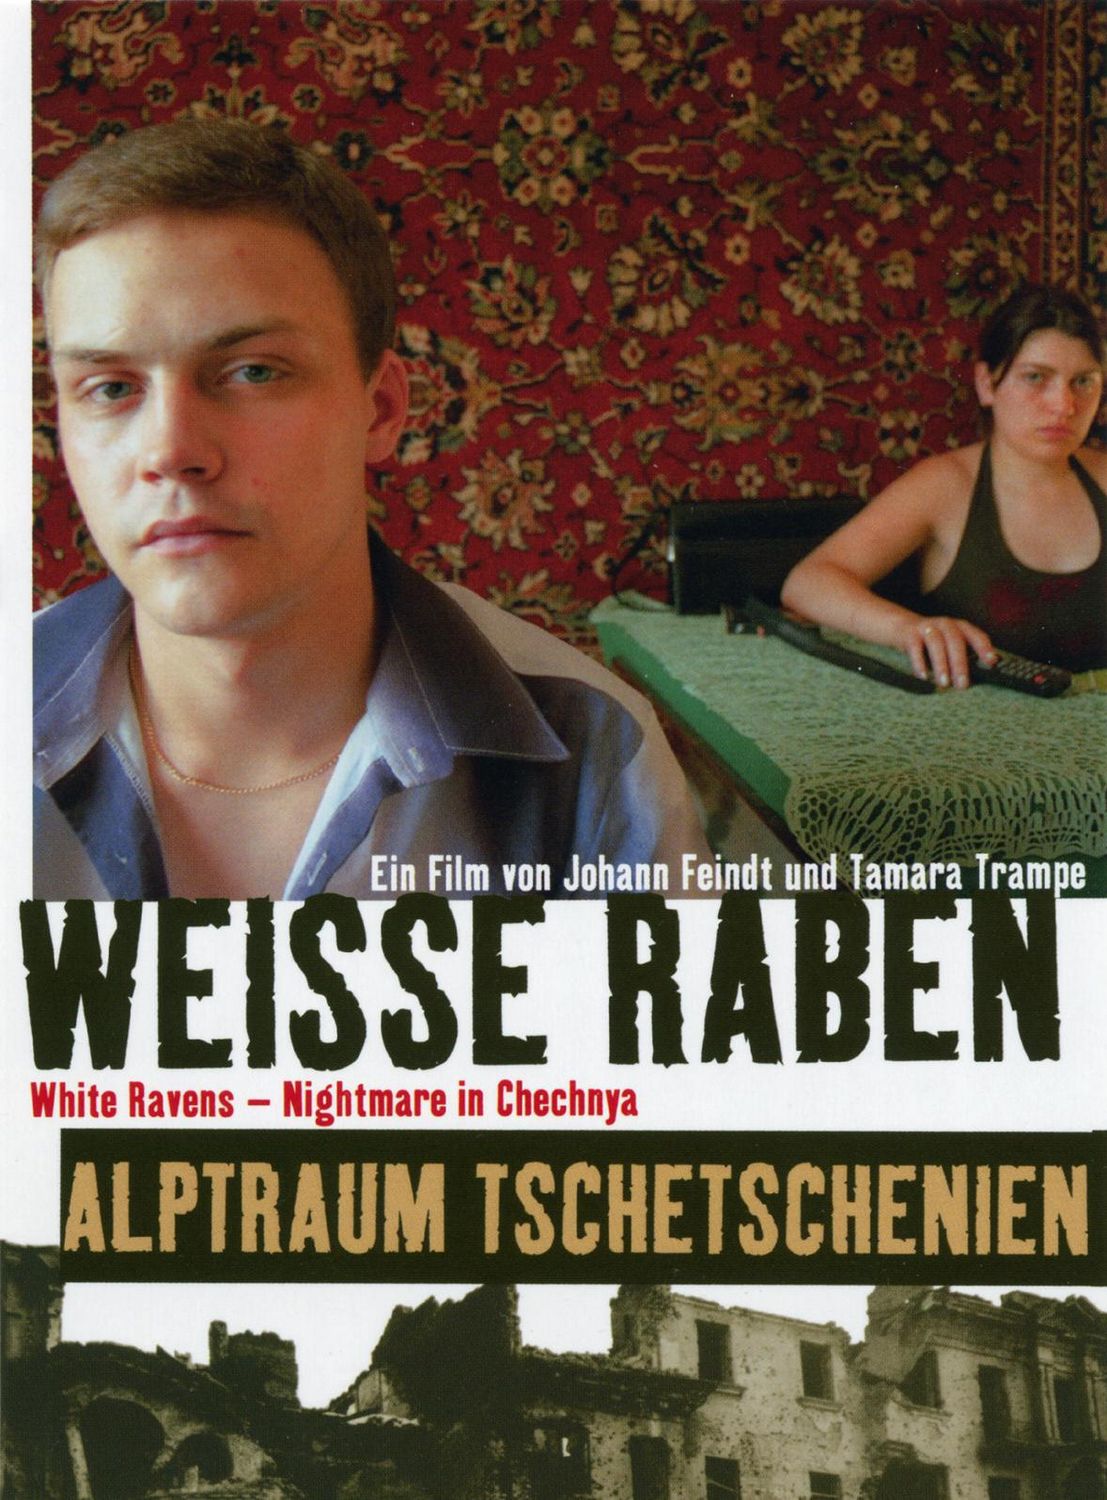 Extra Large Movie Poster Image for Weiße Raben - Alptraum Tschetschenien 